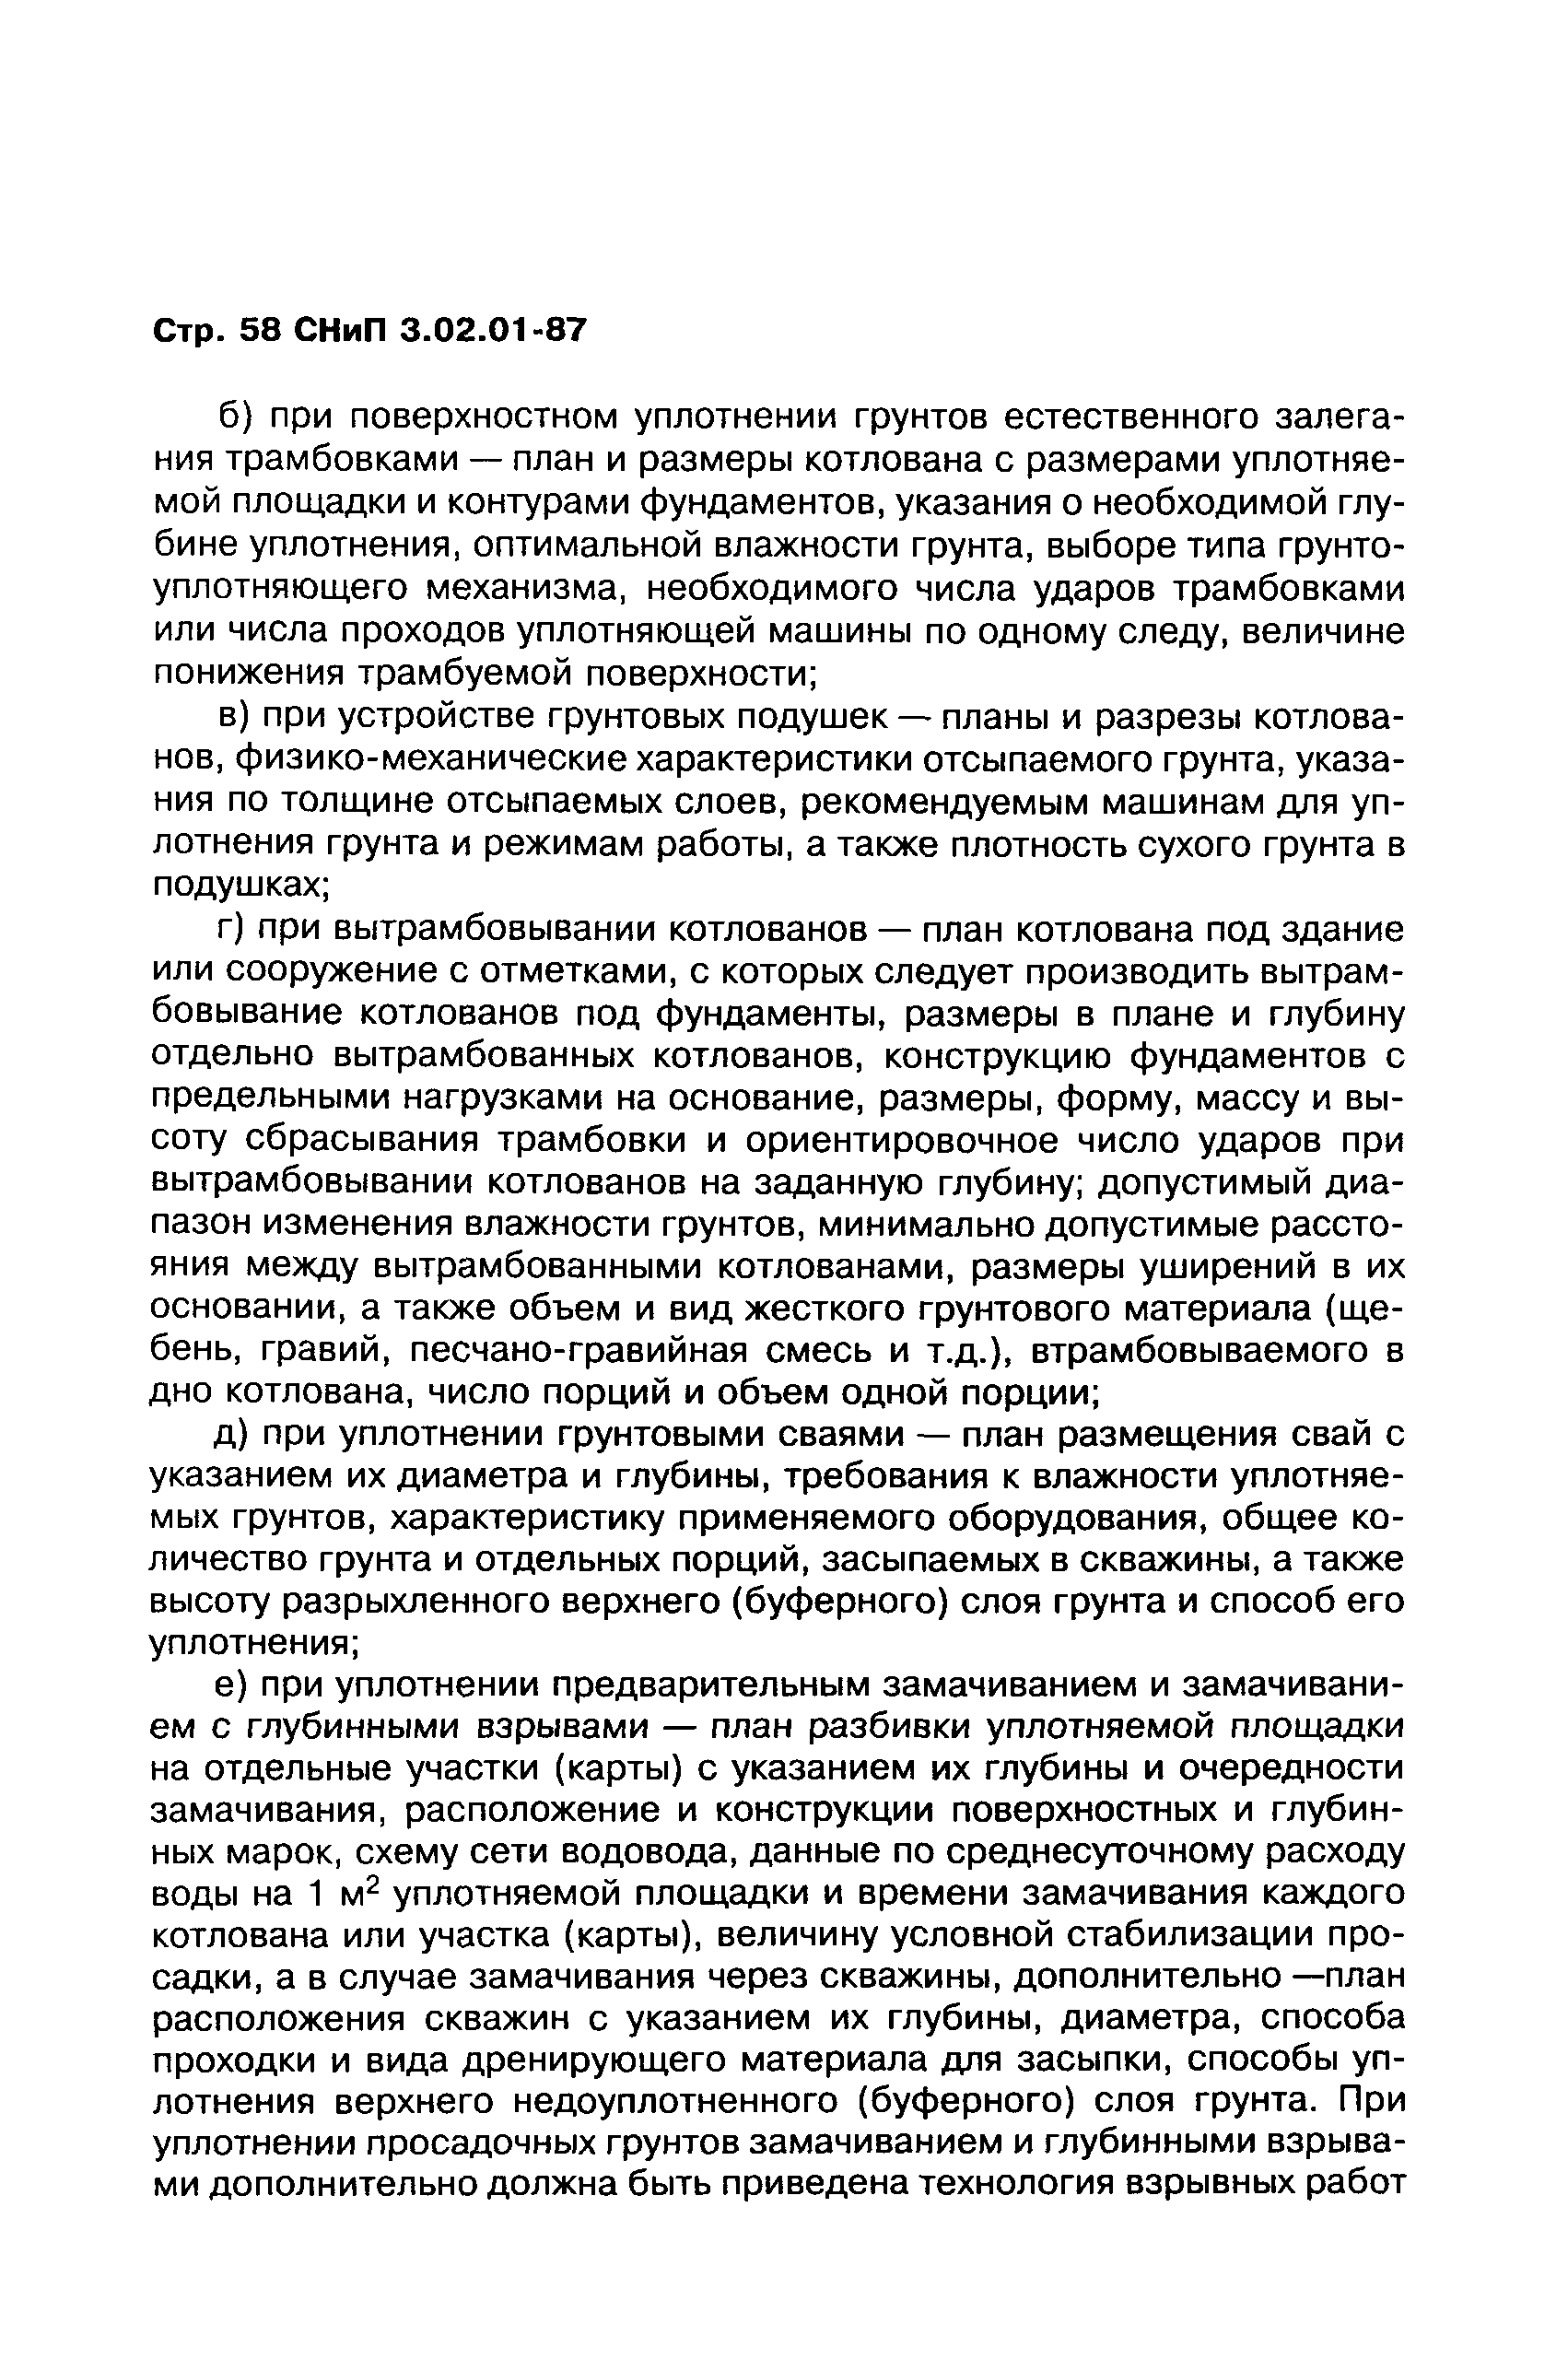 СНиП 3.02.01-87